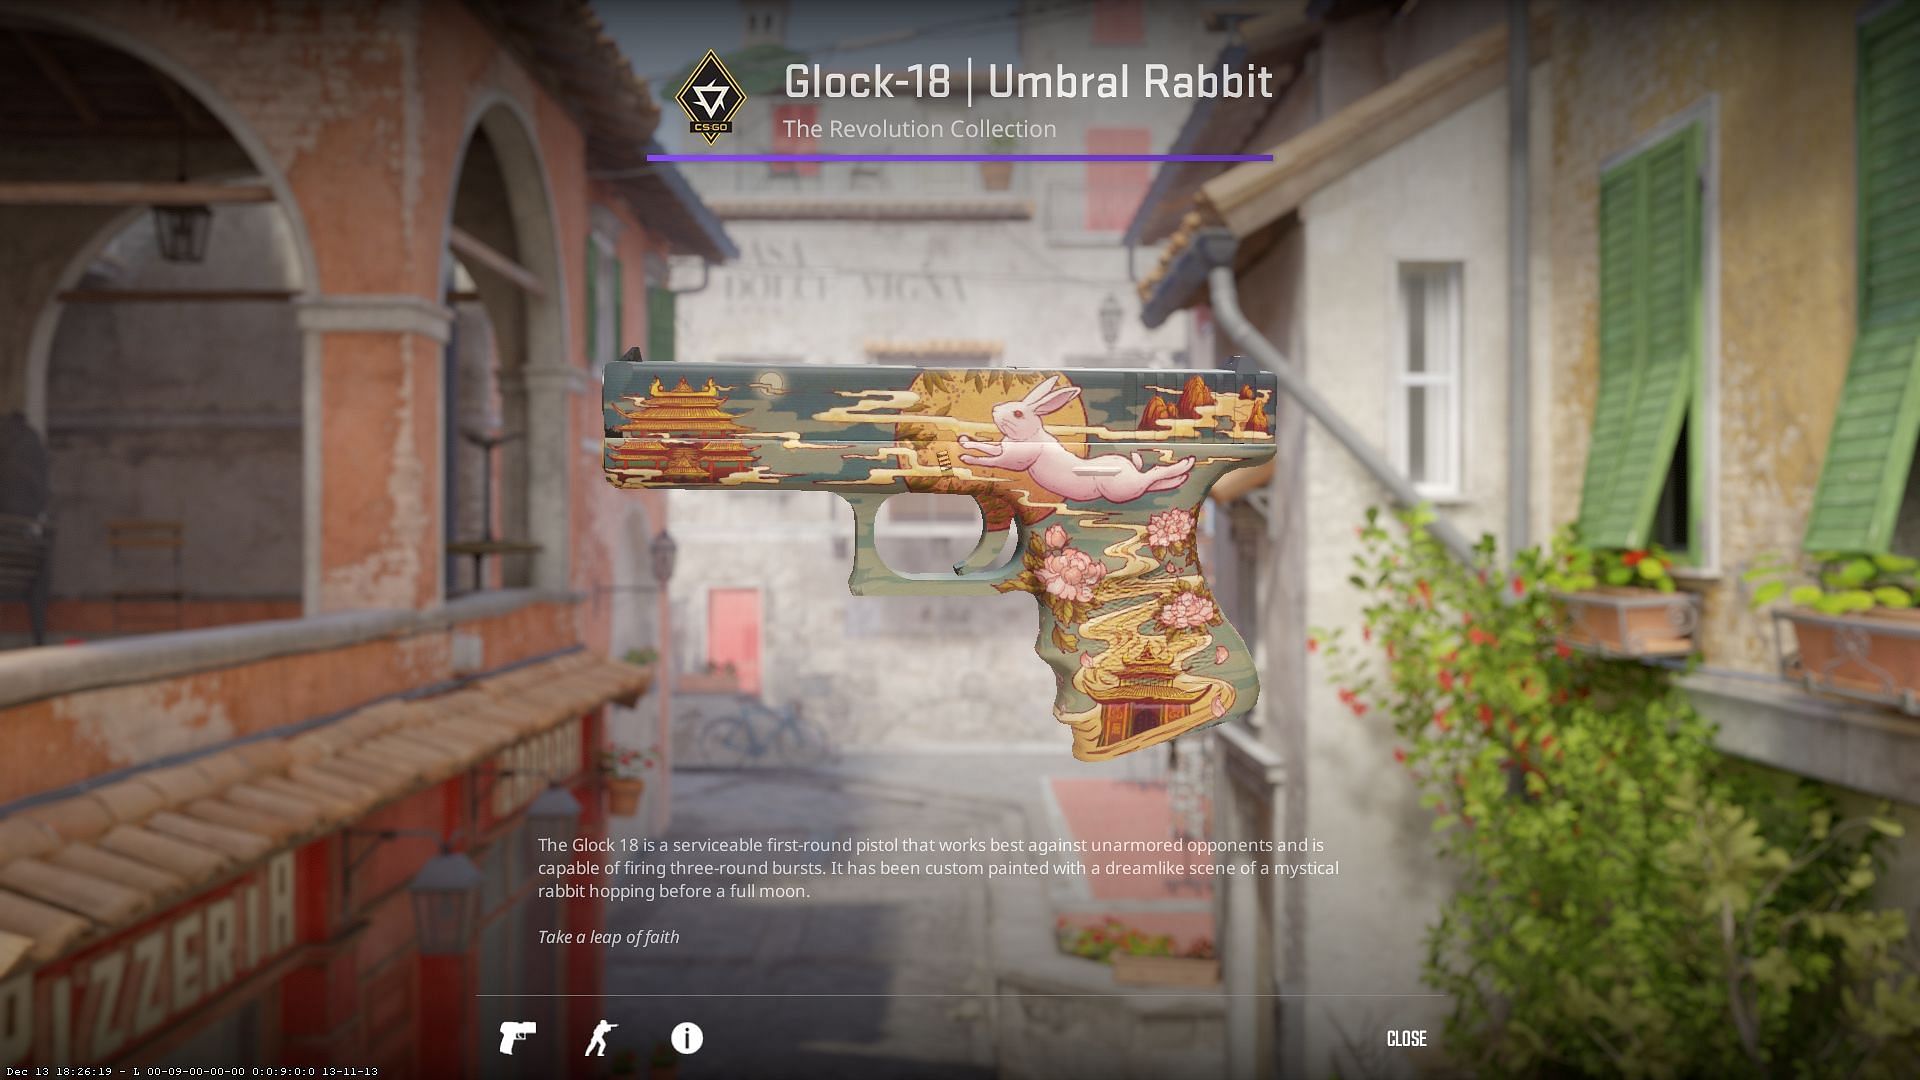 Glock-18 Umbral Rabbit (Image via Valve)